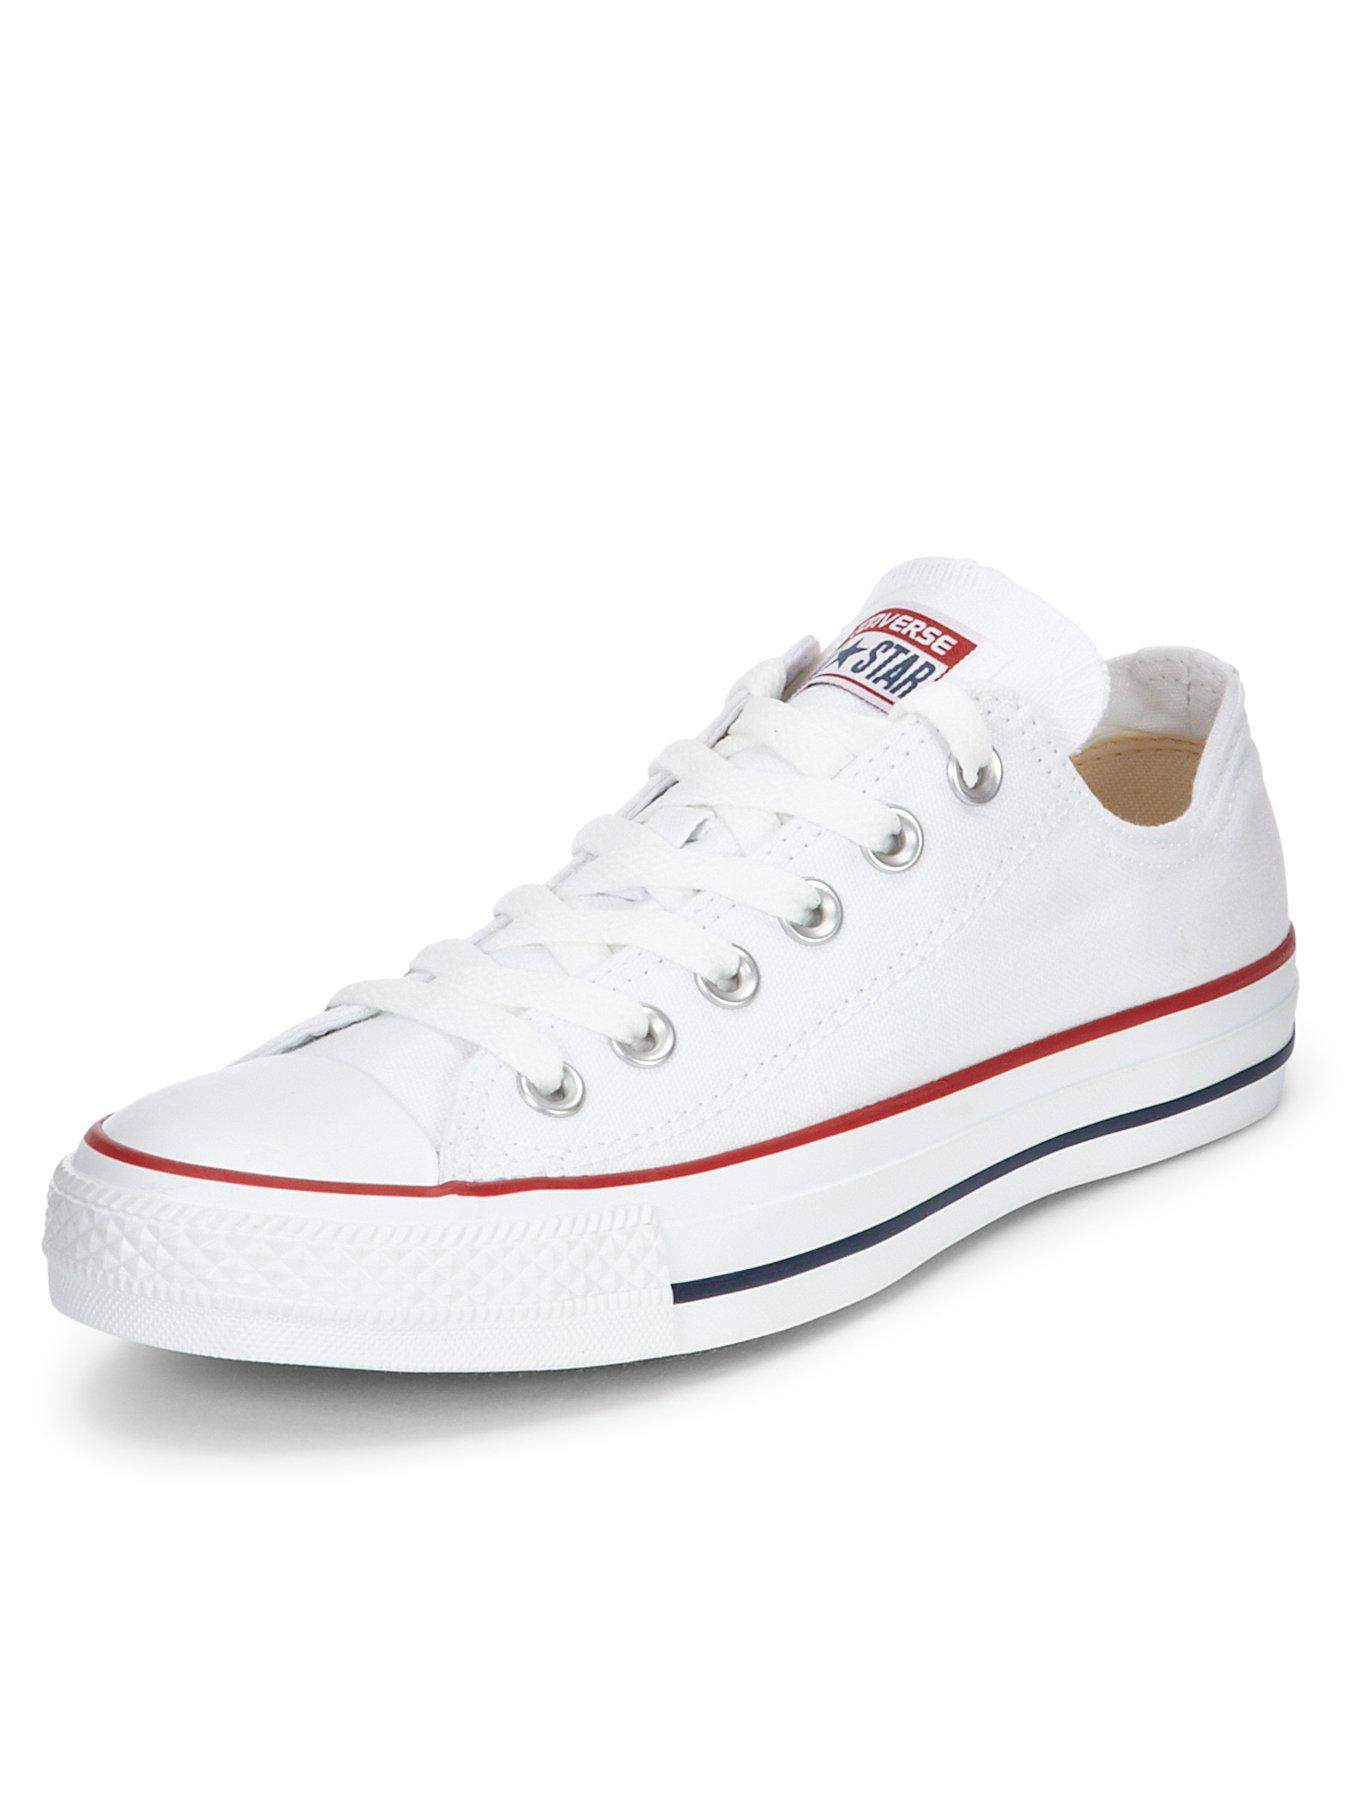 white converse size 4.5 uk 